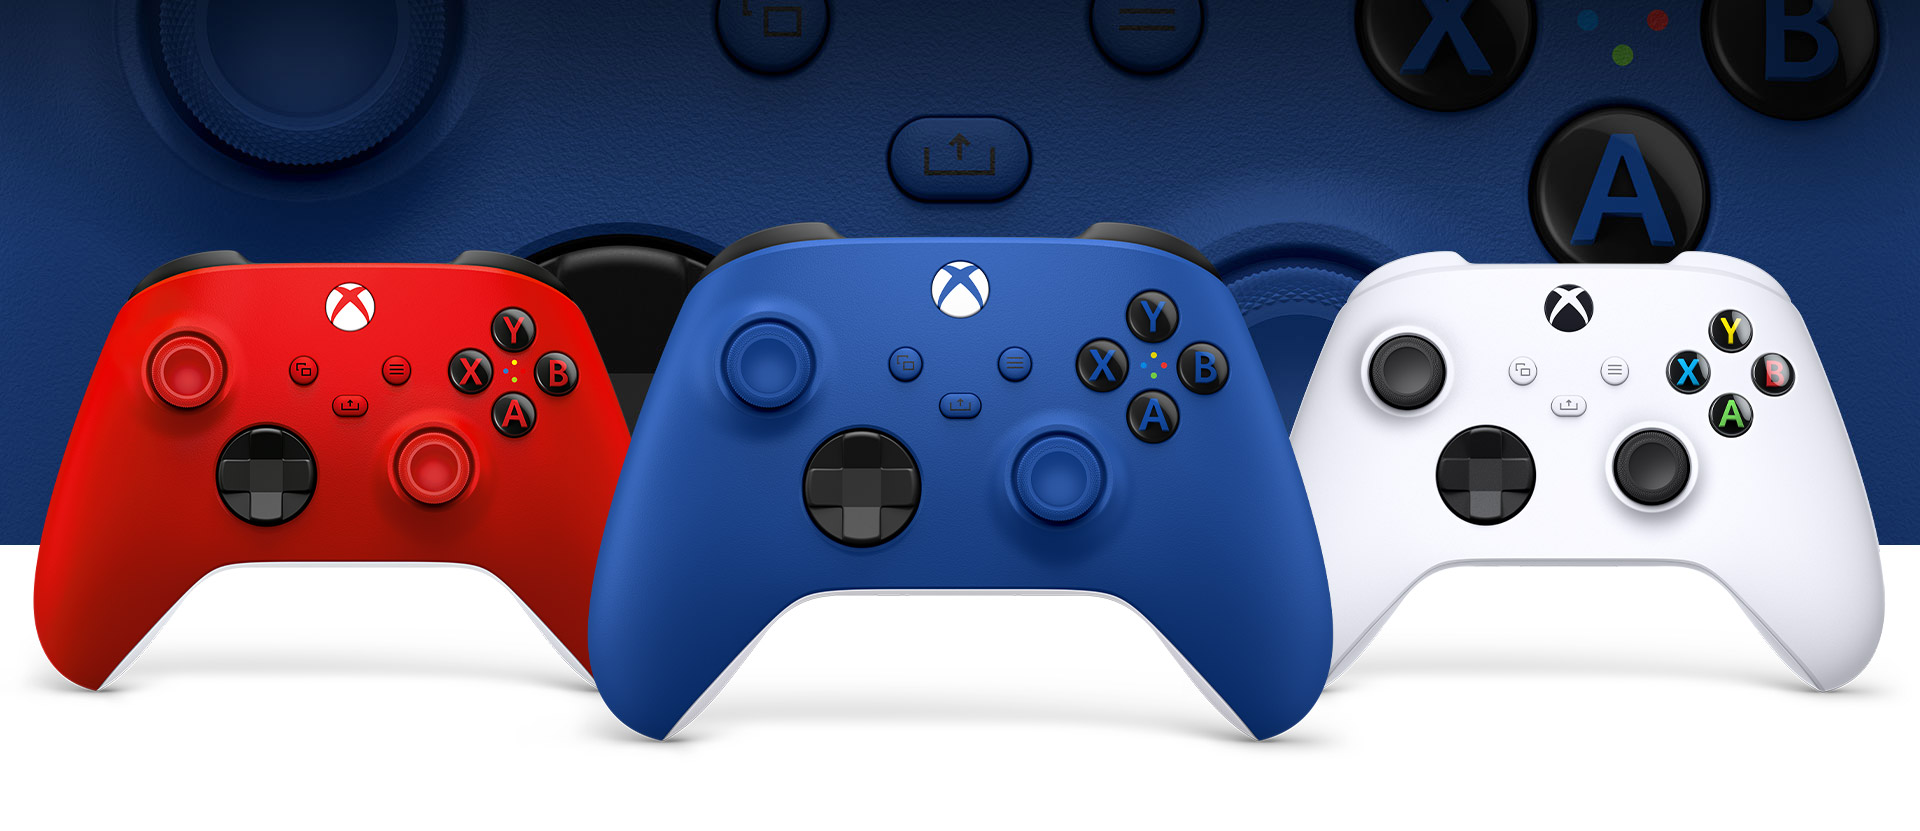 Xbox controller shock blue vooraan met de controllers robot white en pulse red ernaast